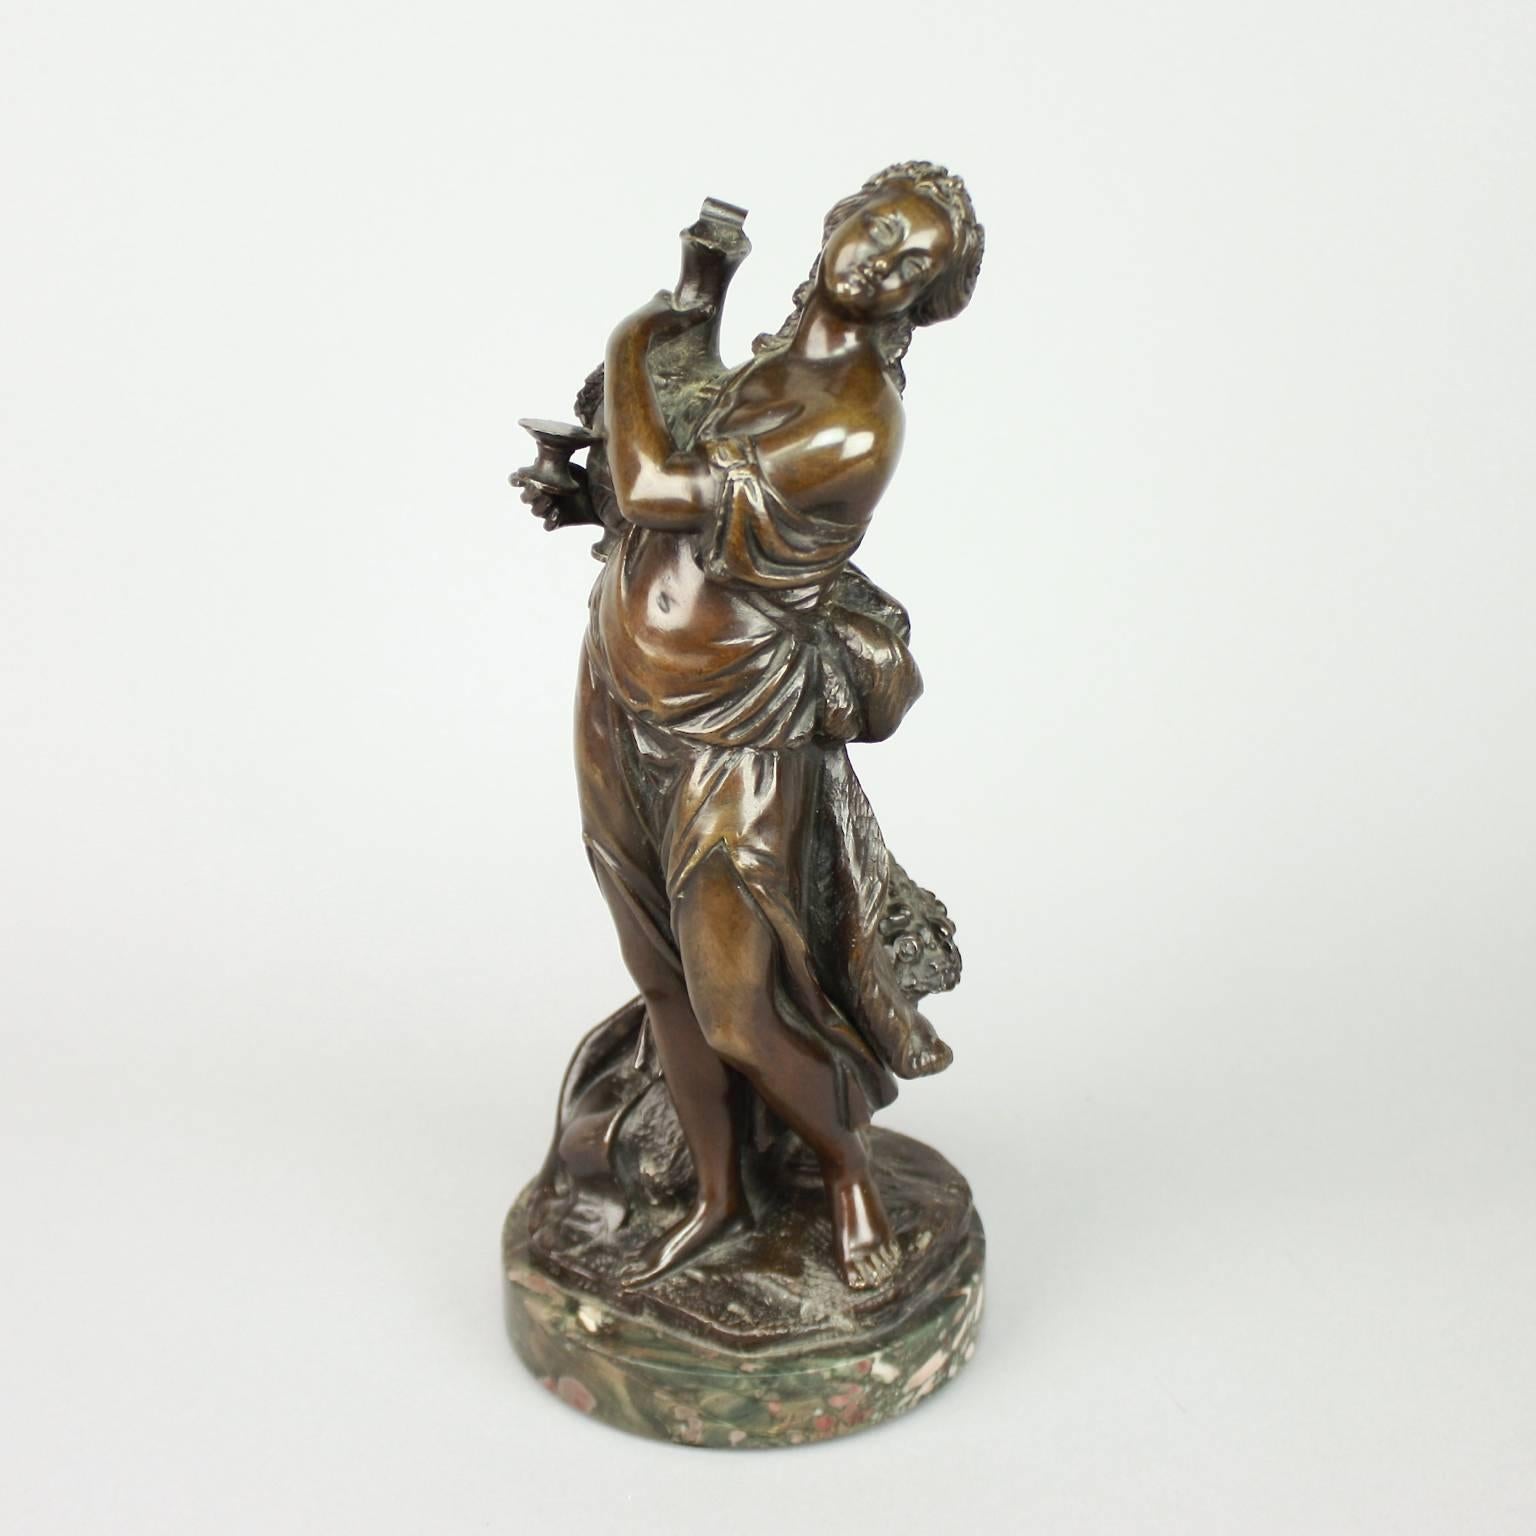 Seltenes Paar von Bronzeskulpturen, die eine Bacchantin und einen Faun darstellen, nach einem Entwurf von Jean-Hugues Taraval aus dem Jahr 1773. Jean-Hugues Taraval (1729-1785) war ein französischer Maler, der für seinen 